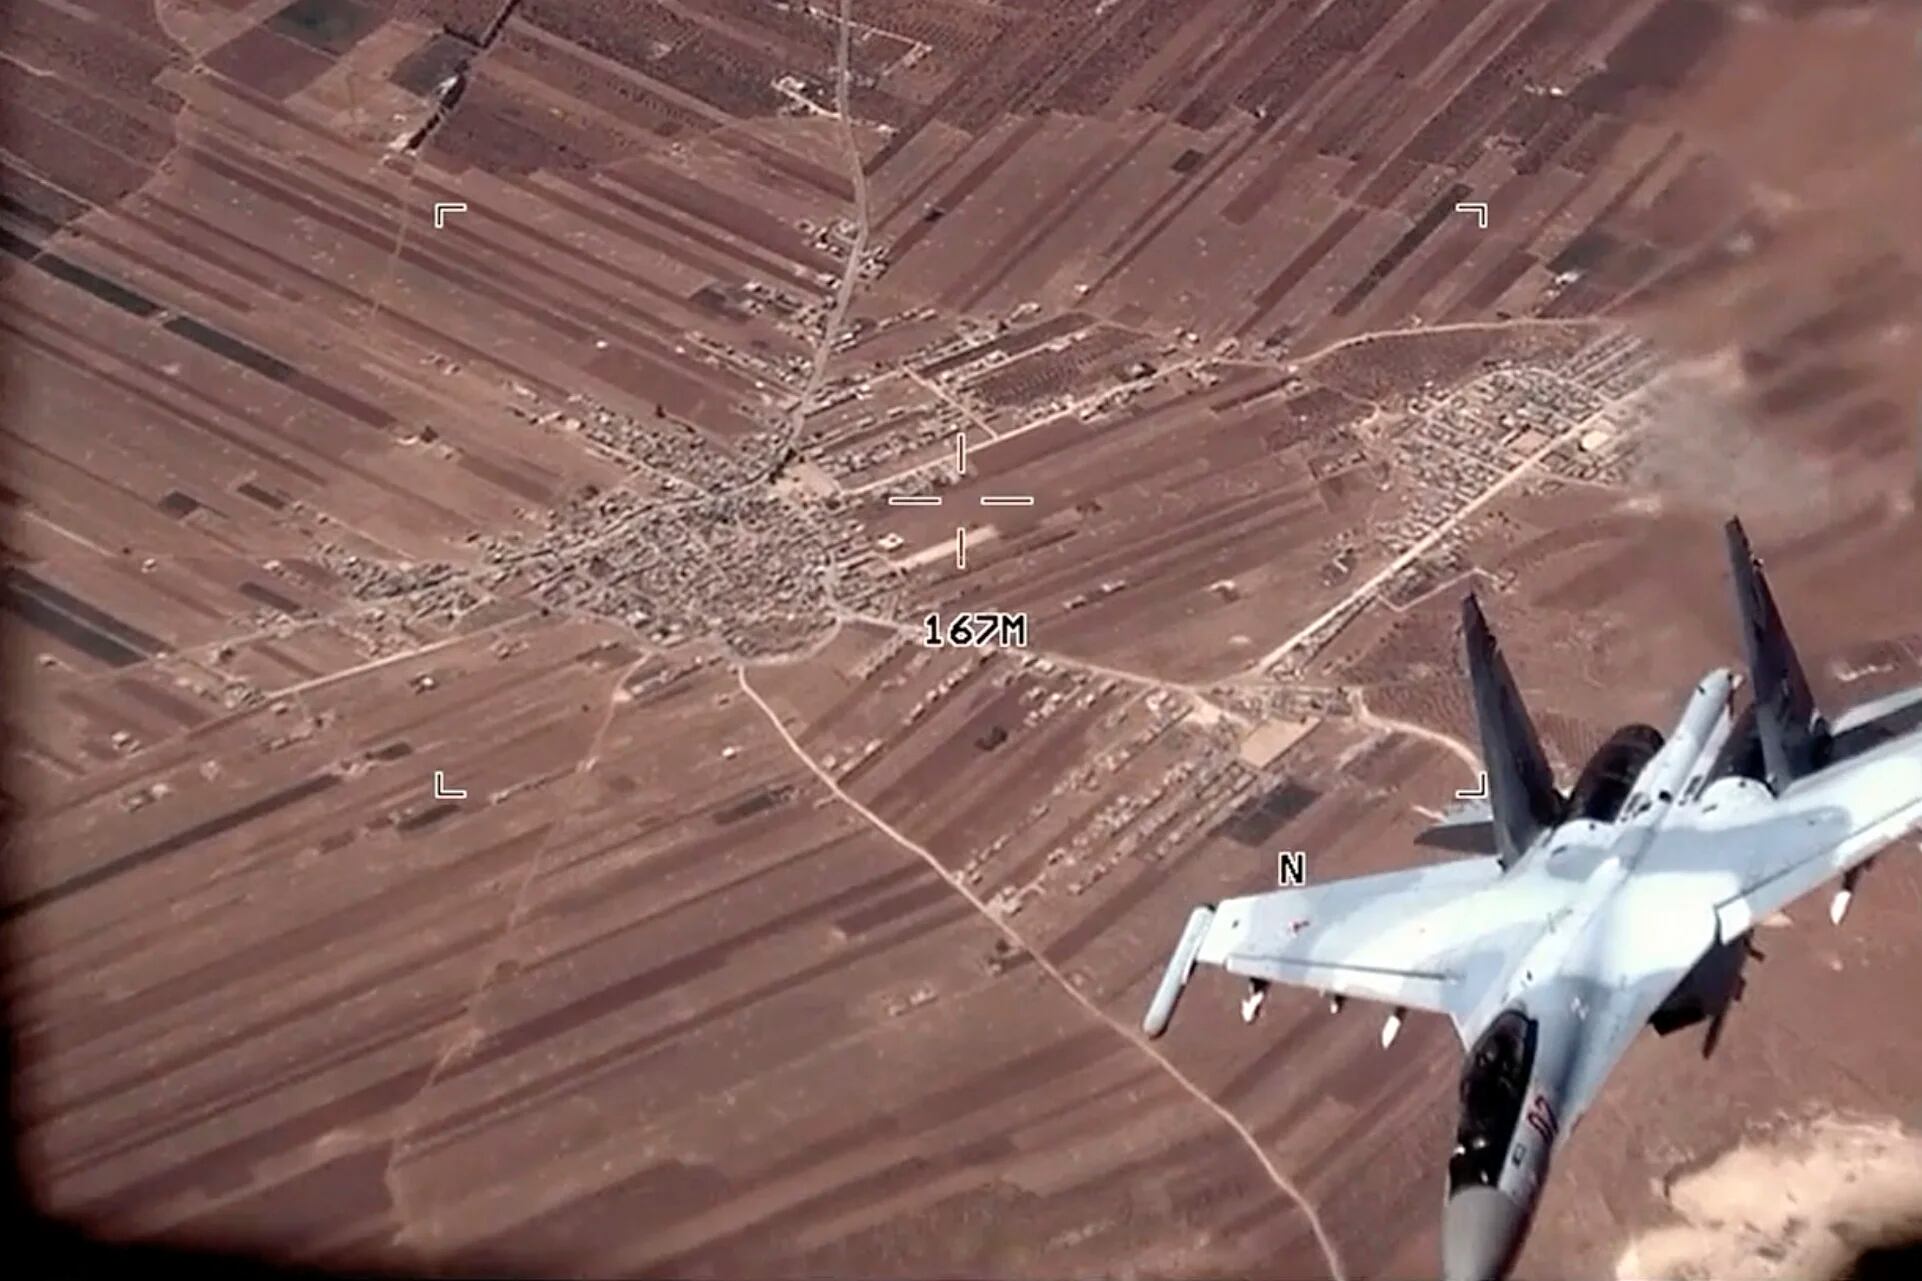 Los aviones tuvieron un comportamiento inseguro y poco profesional, y obstaculizaron una misión contra el ISIS (AP)